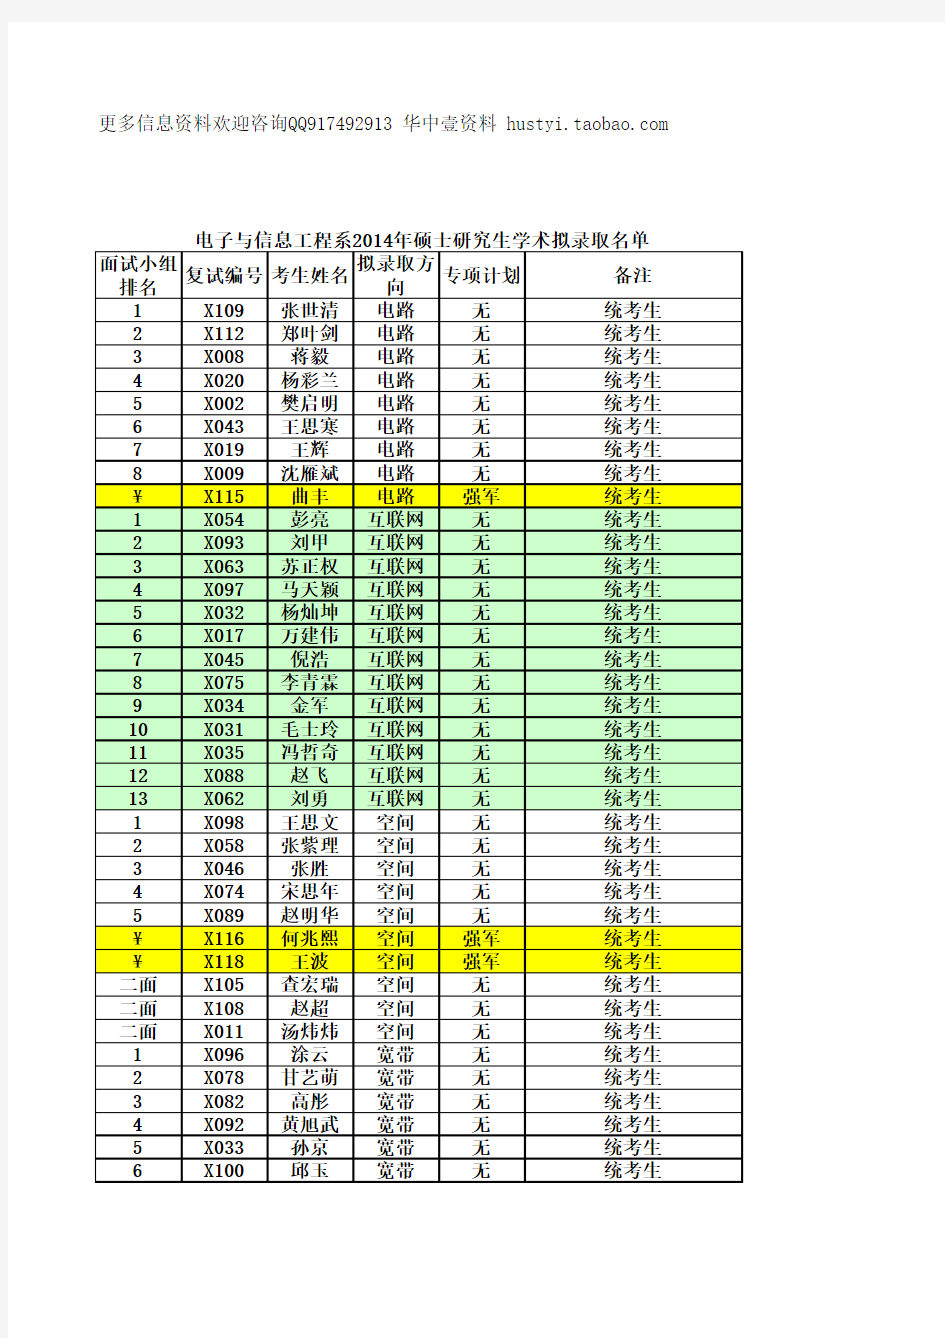 华中科技大学电信系2014年硕士研究生拟录取名单与成绩